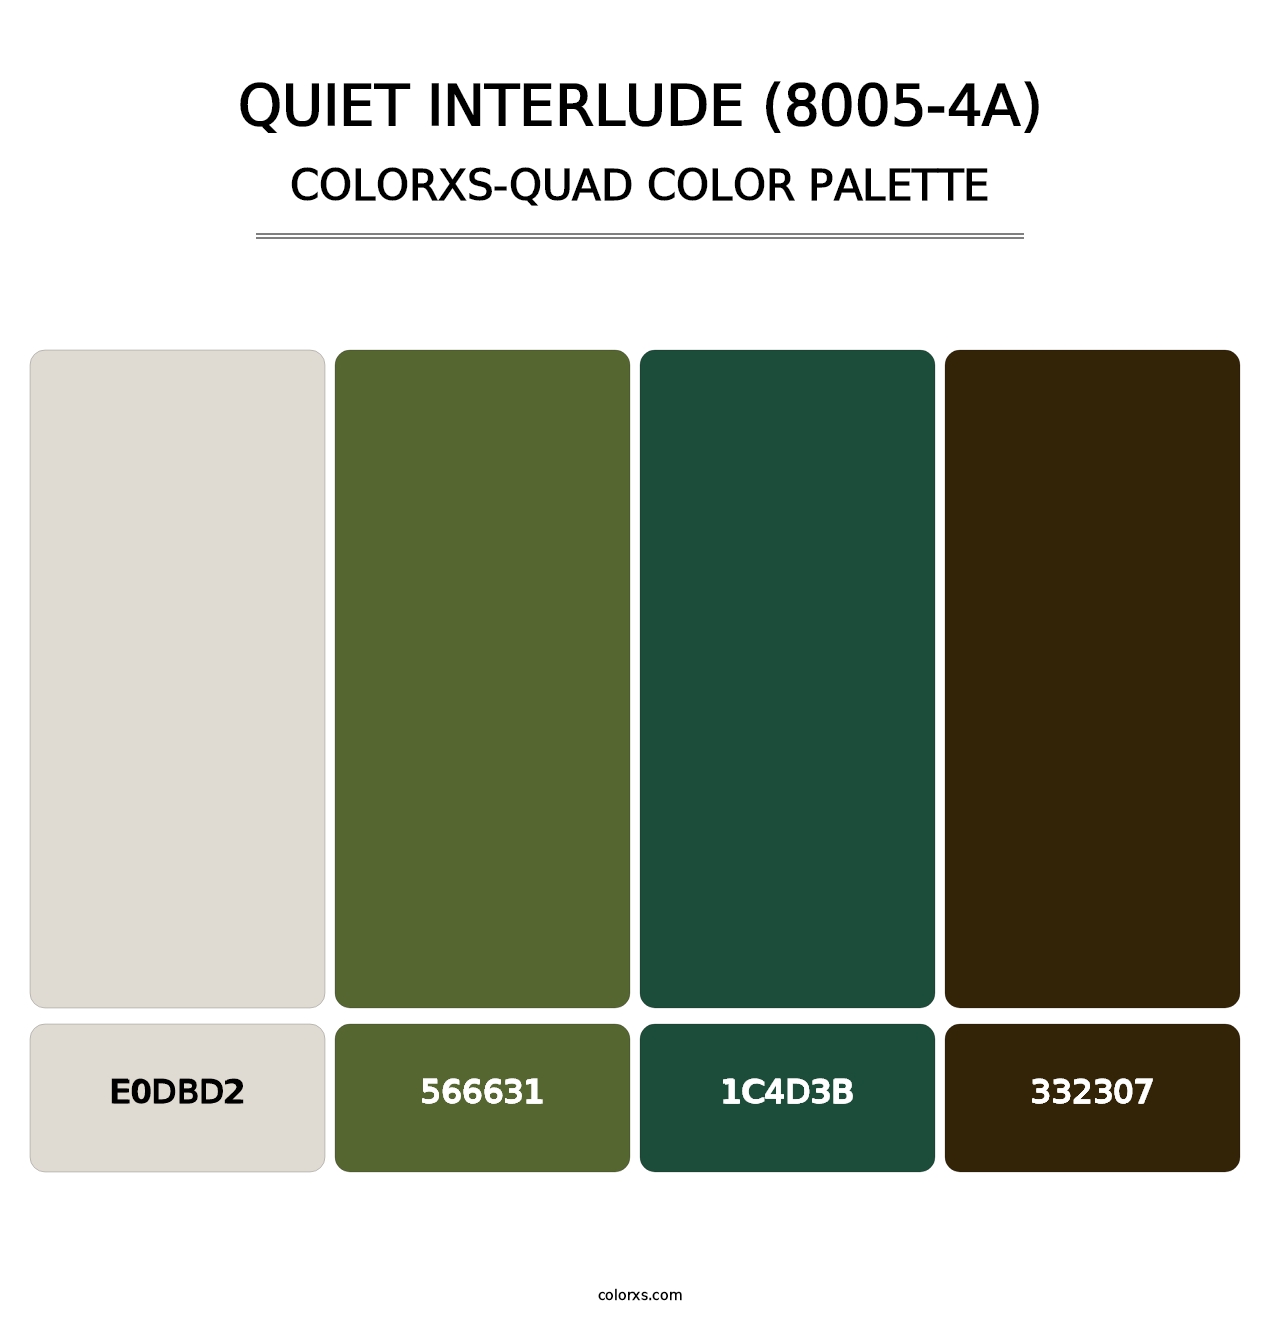 Quiet Interlude (8005-4A) - Colorxs Quad Palette